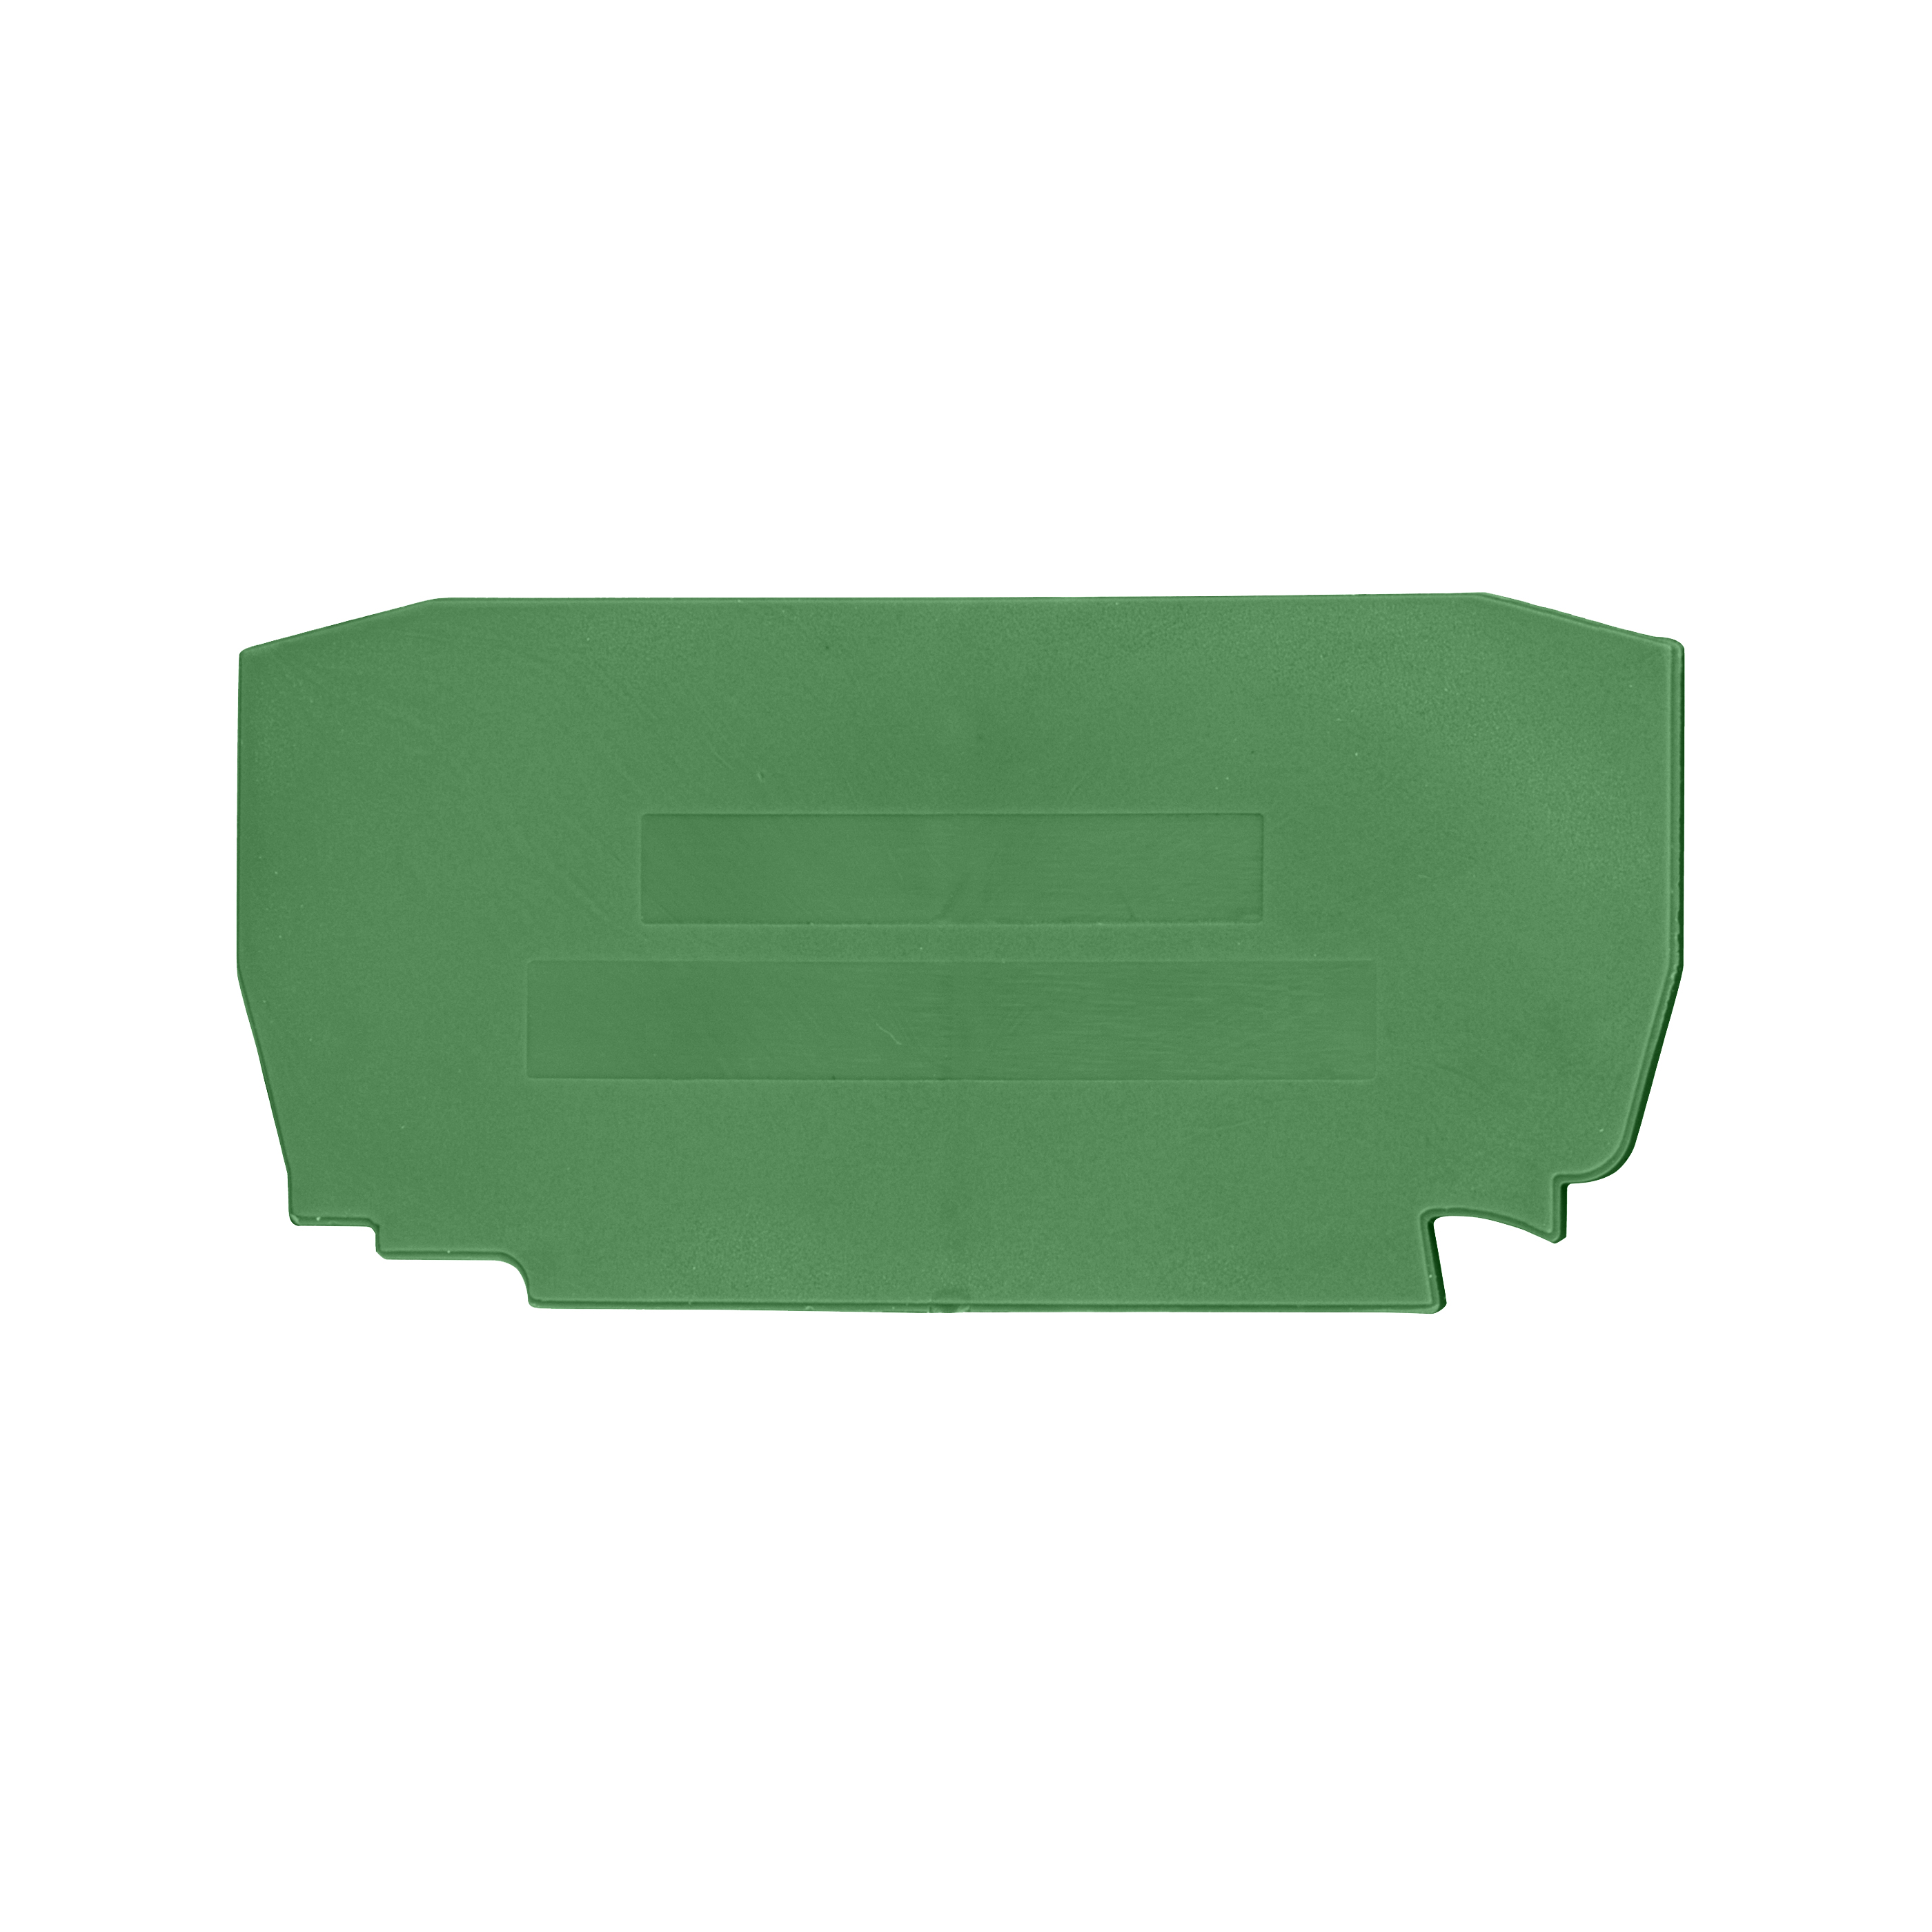 Foto: Endplatte für Federkraftklemme YBK 2.5 T grün (c) Schrack